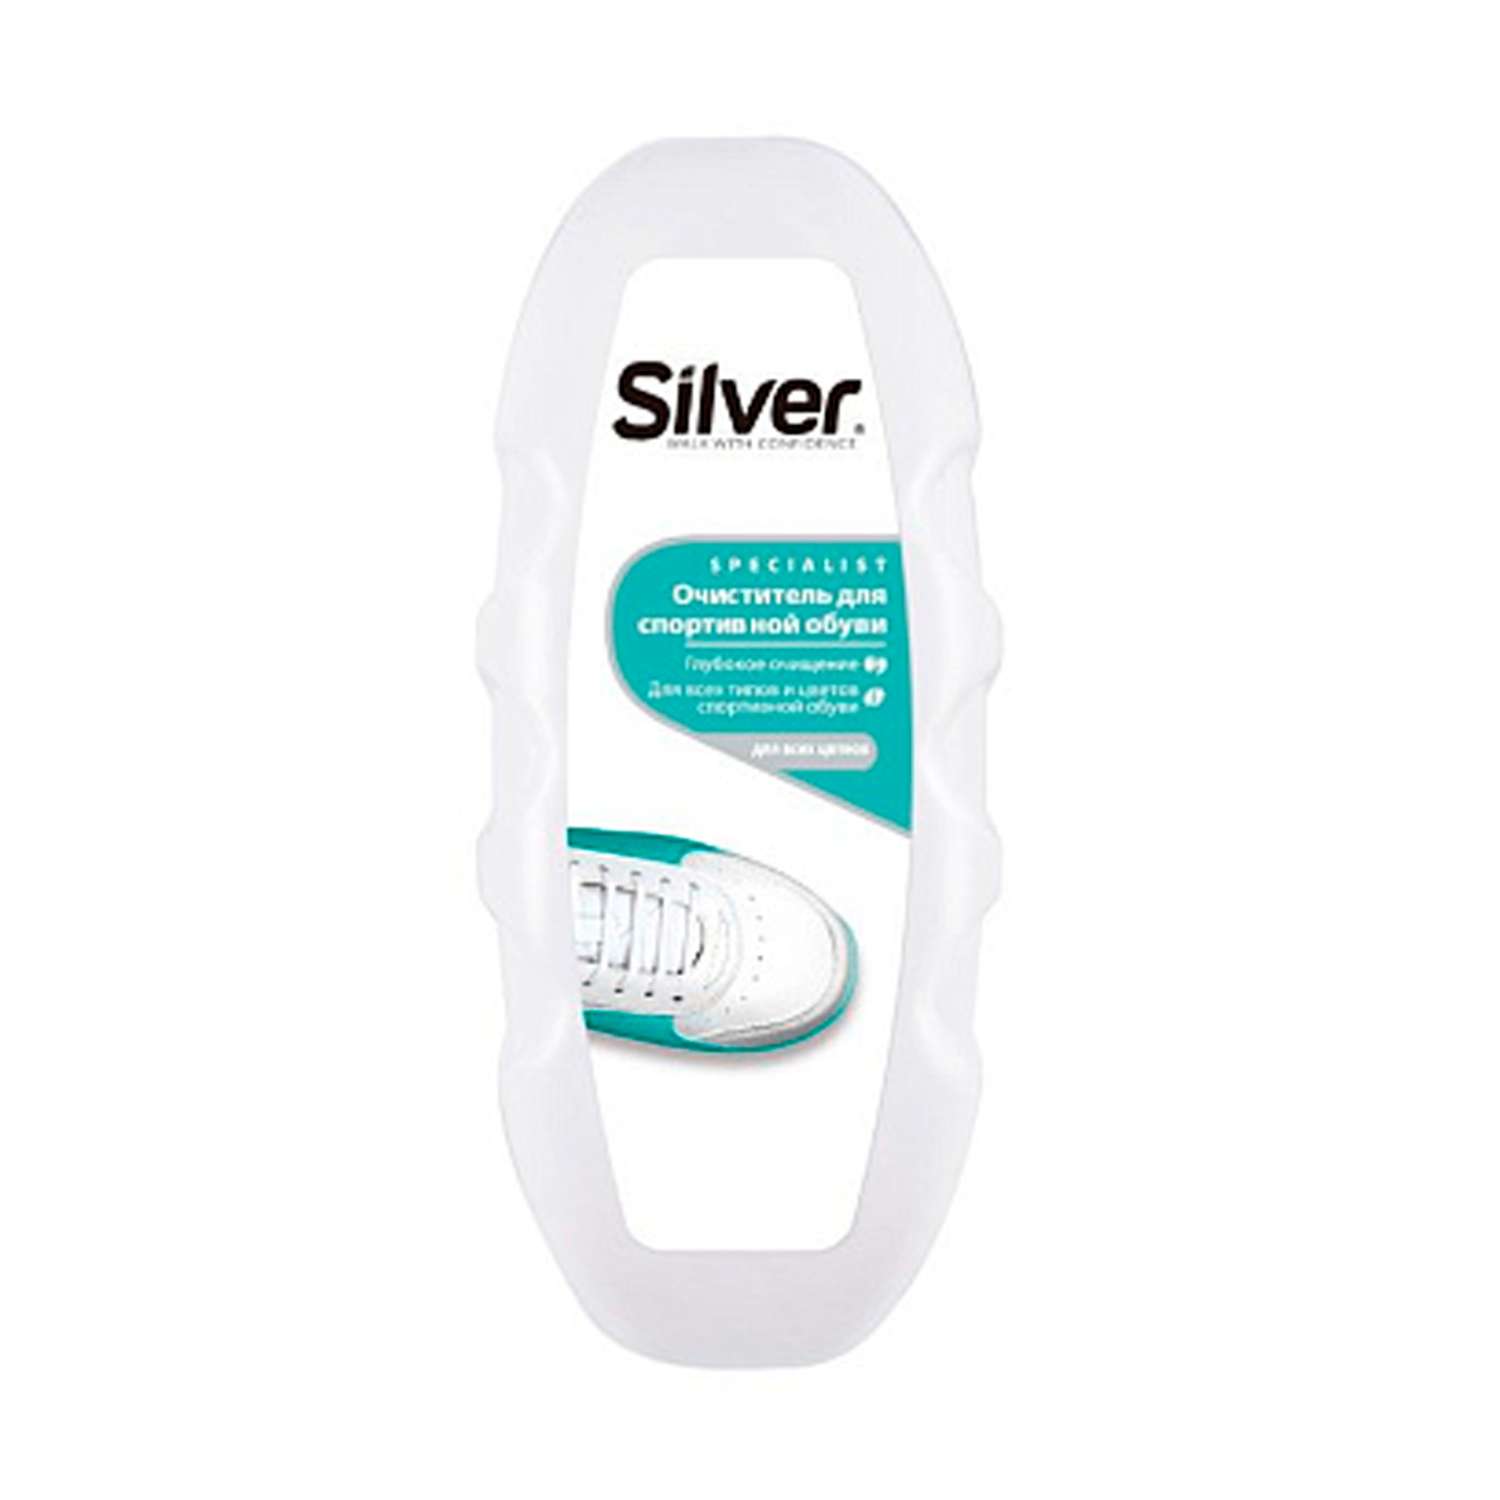 Губка-очиститель Silver Для спортивной обуви - фото 1